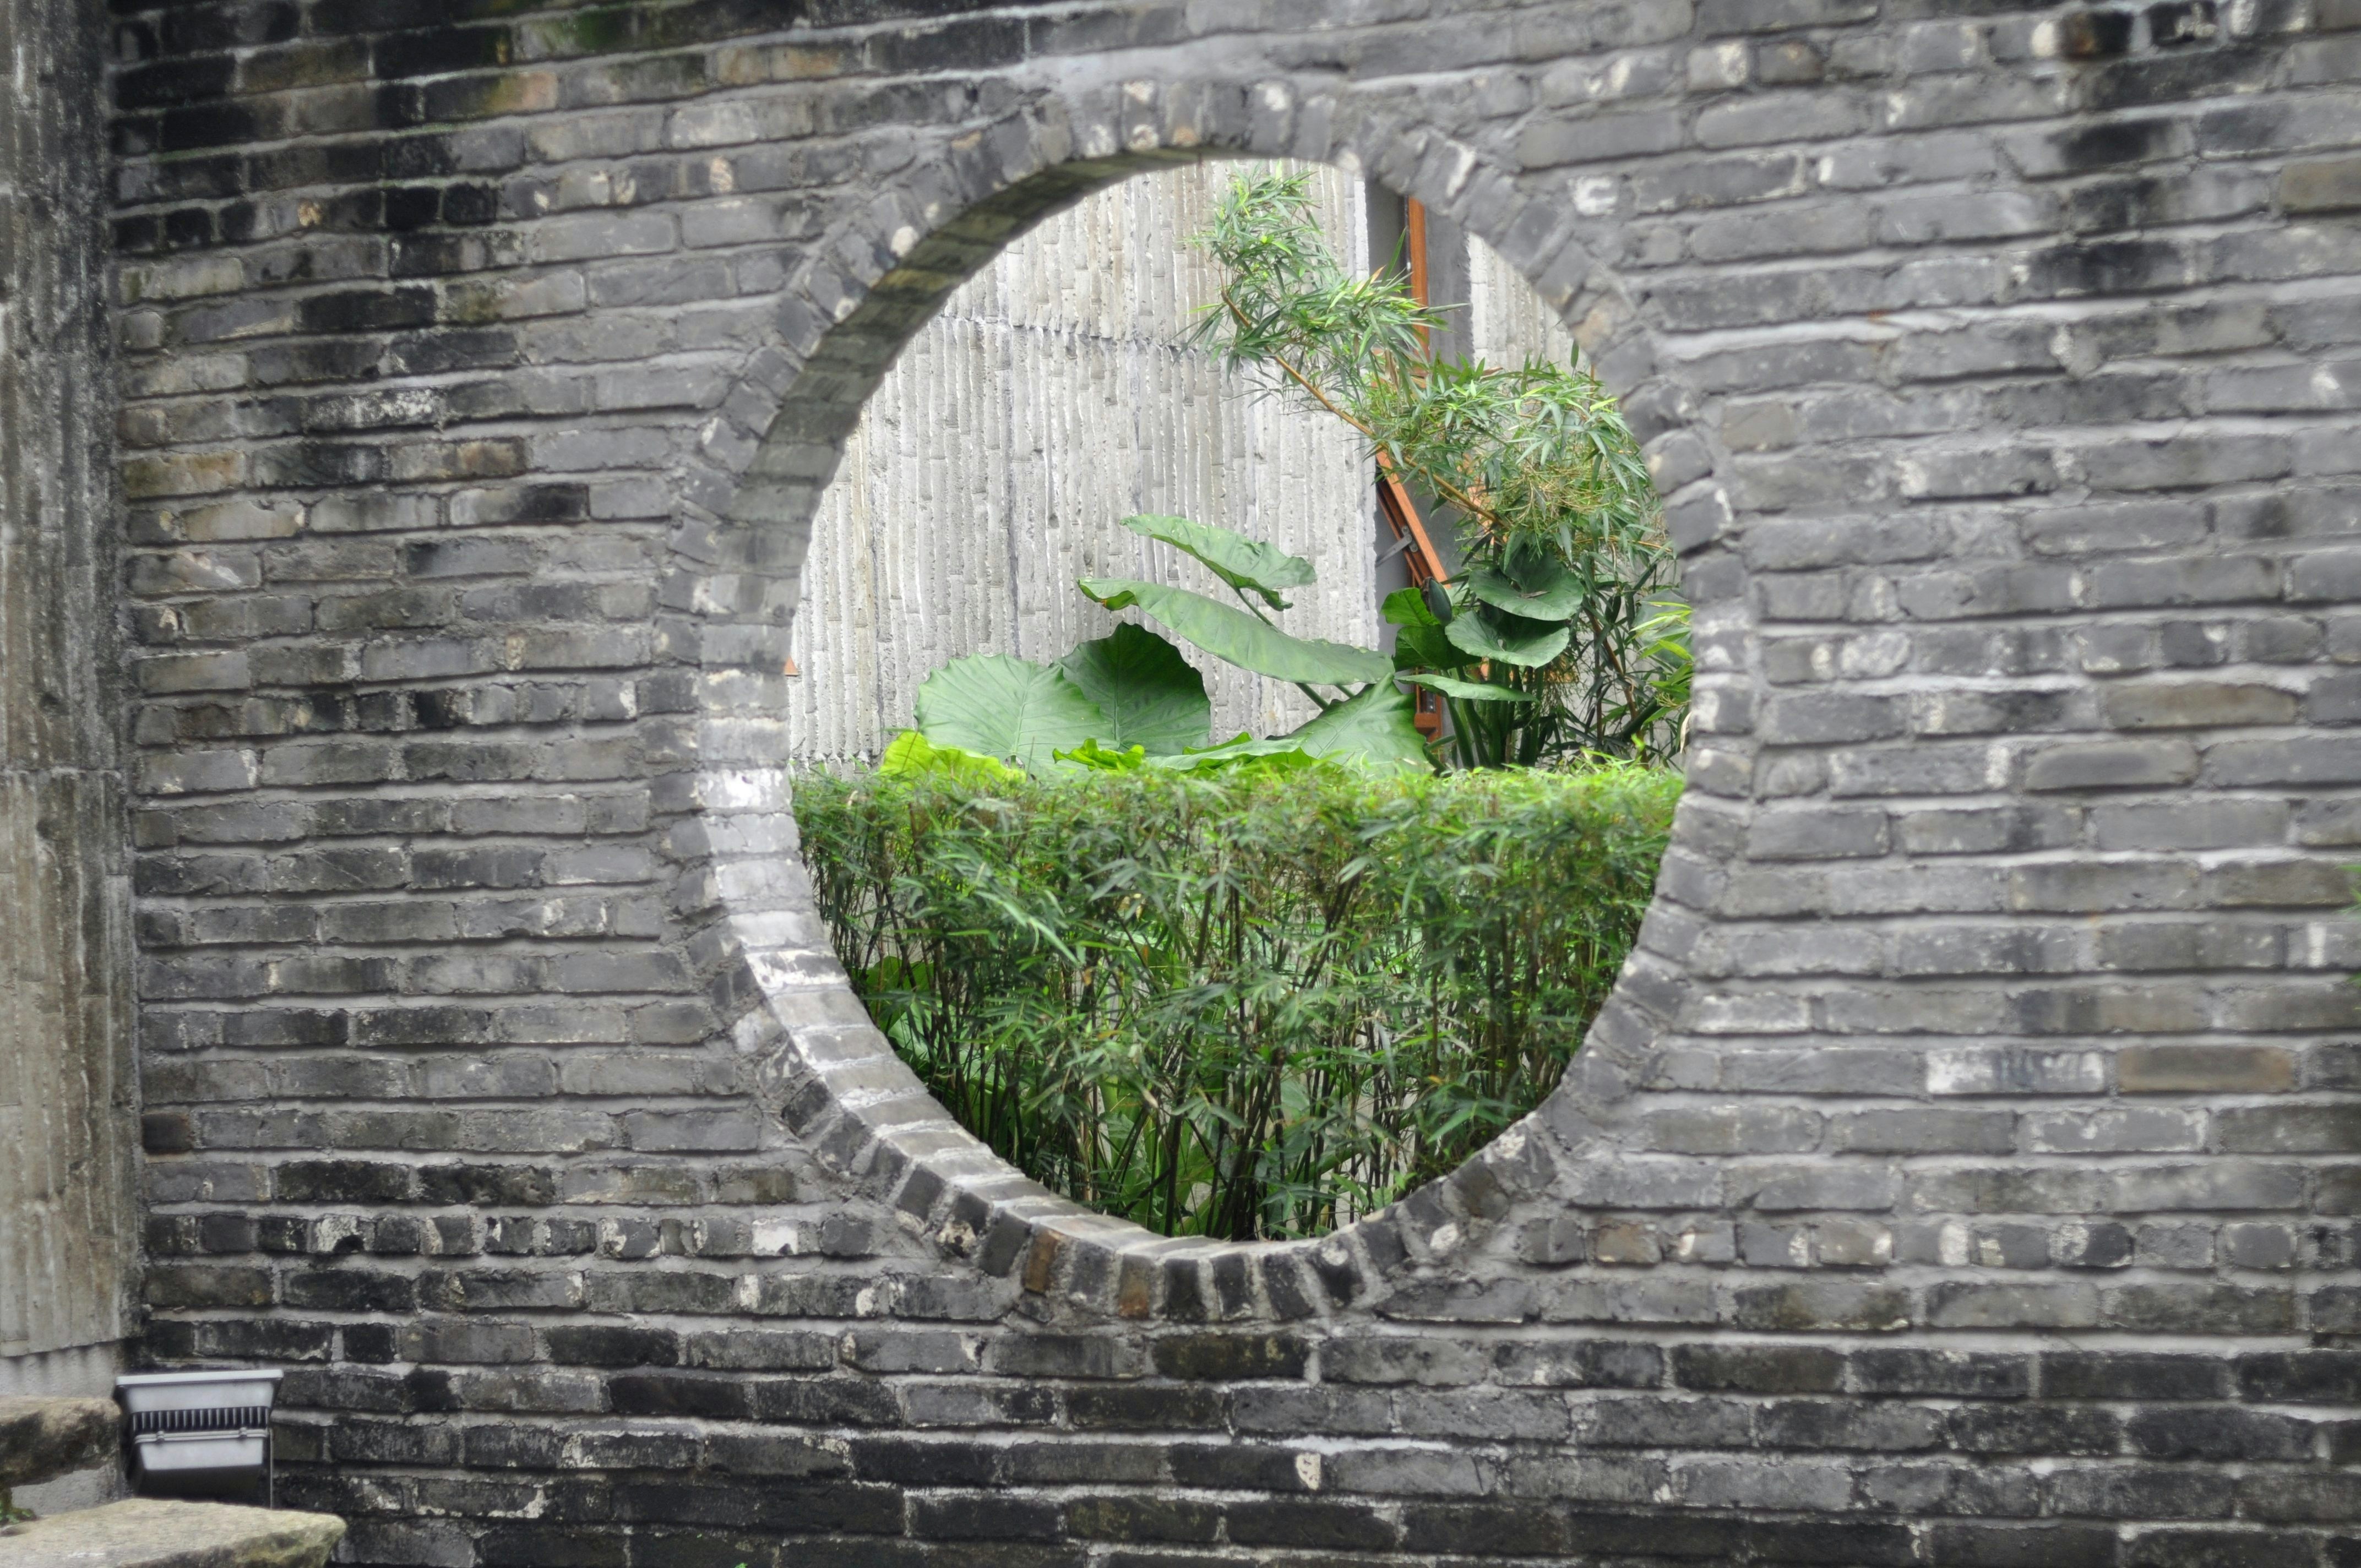 闲情绿意透墙来 Chinese Style Hollow out Wall Courtyard 中式 Leisure and green Scene come through the wall,Login Wallpaper